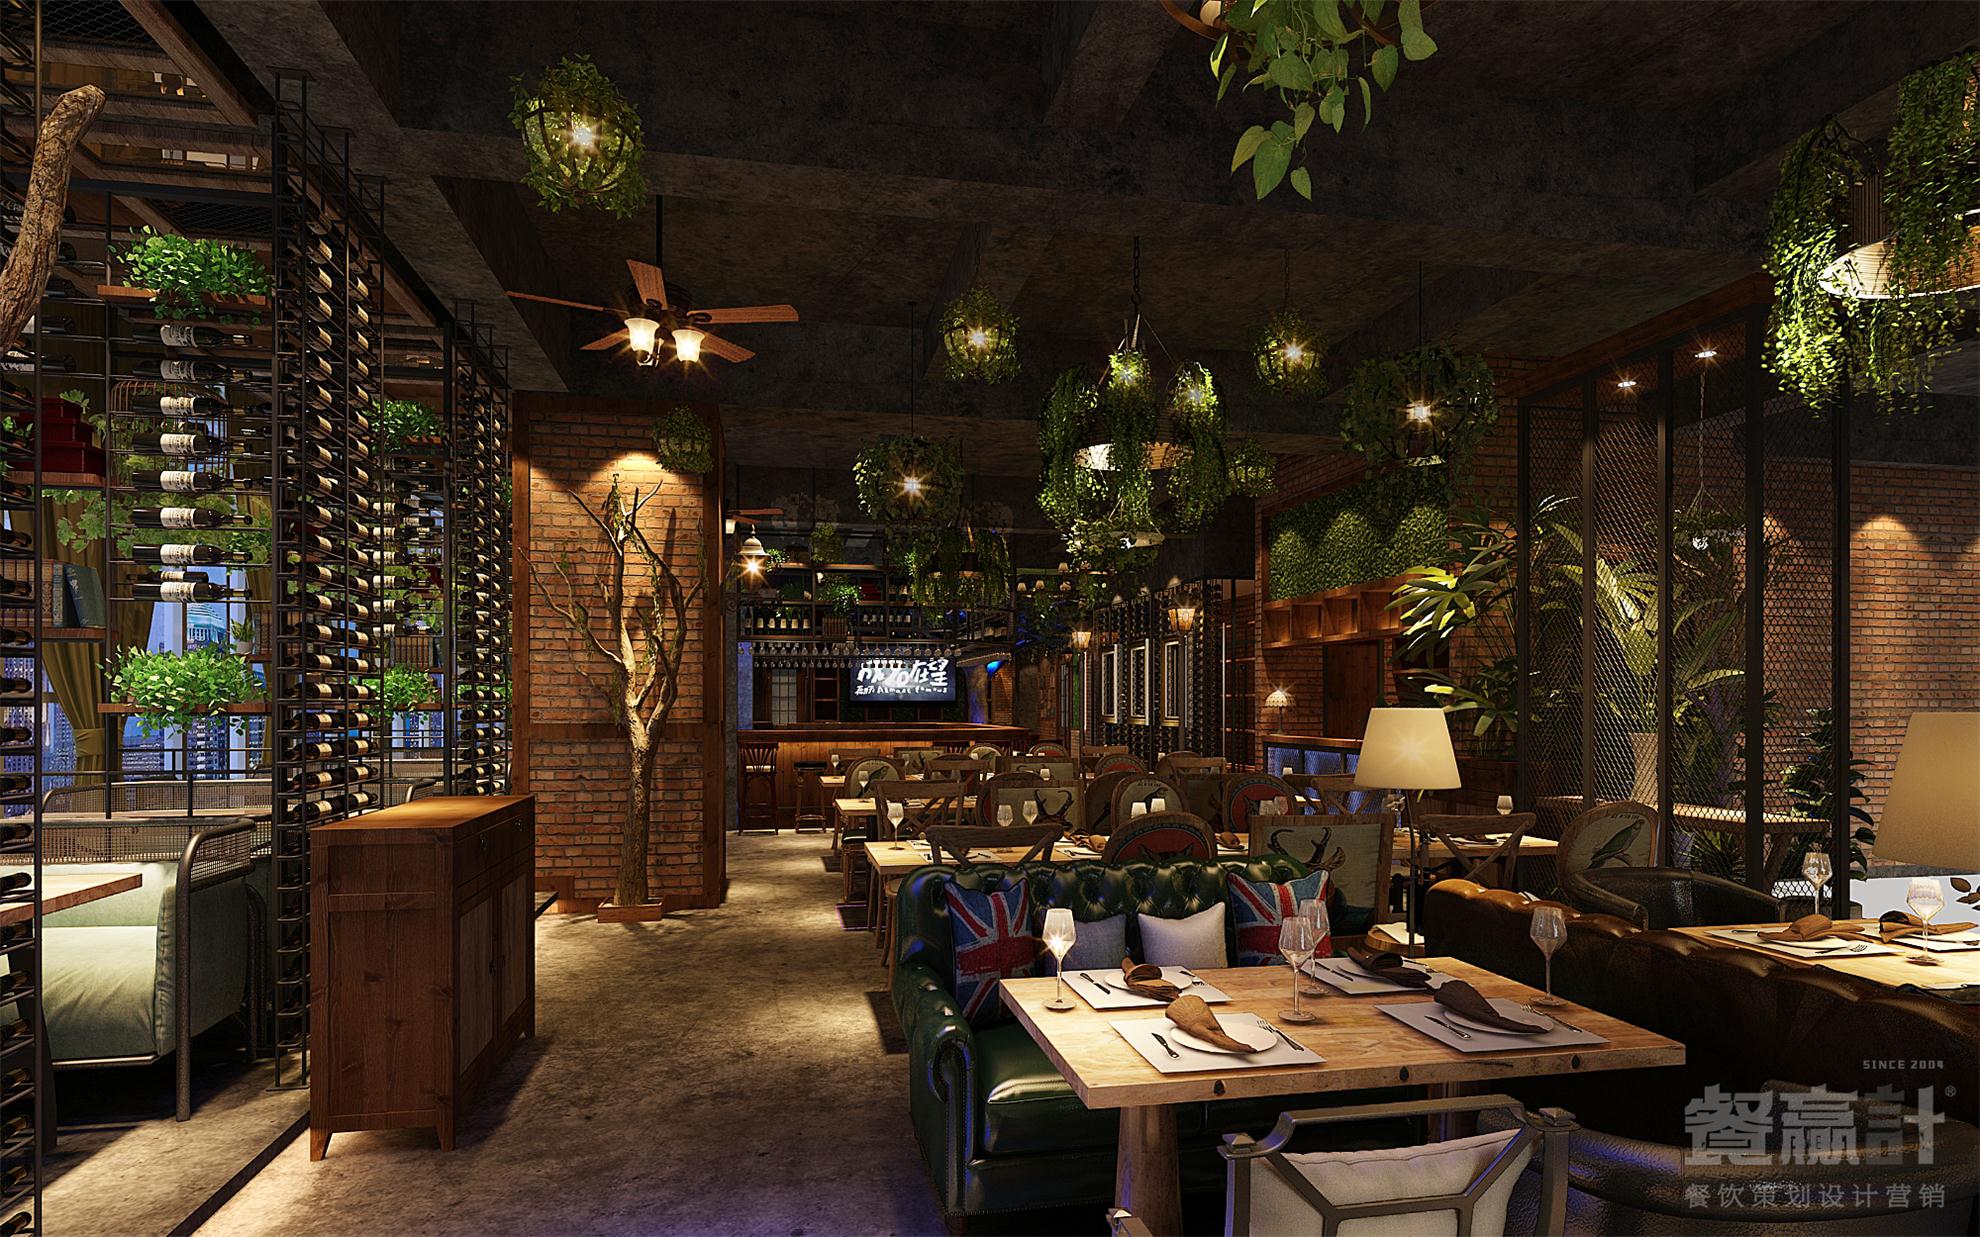 东莞音乐餐吧空间策划设计——城里故事网红音乐餐吧创意空间